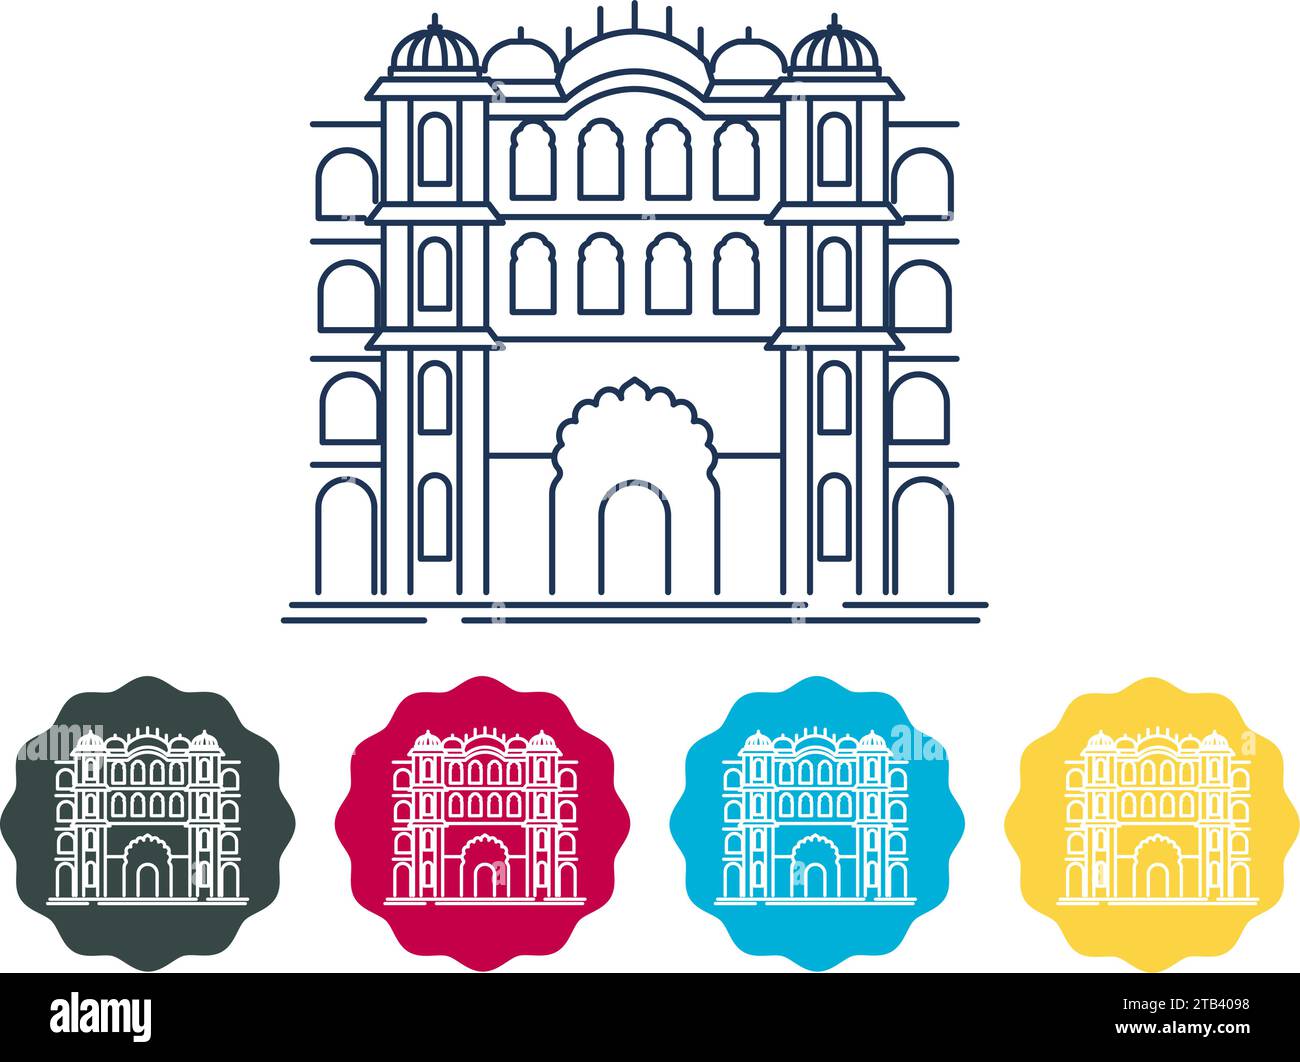 Palazzo della città di Jaipur, Rajasthan - Stock Illustration as EPS 10 file Illustrazione Vettoriale